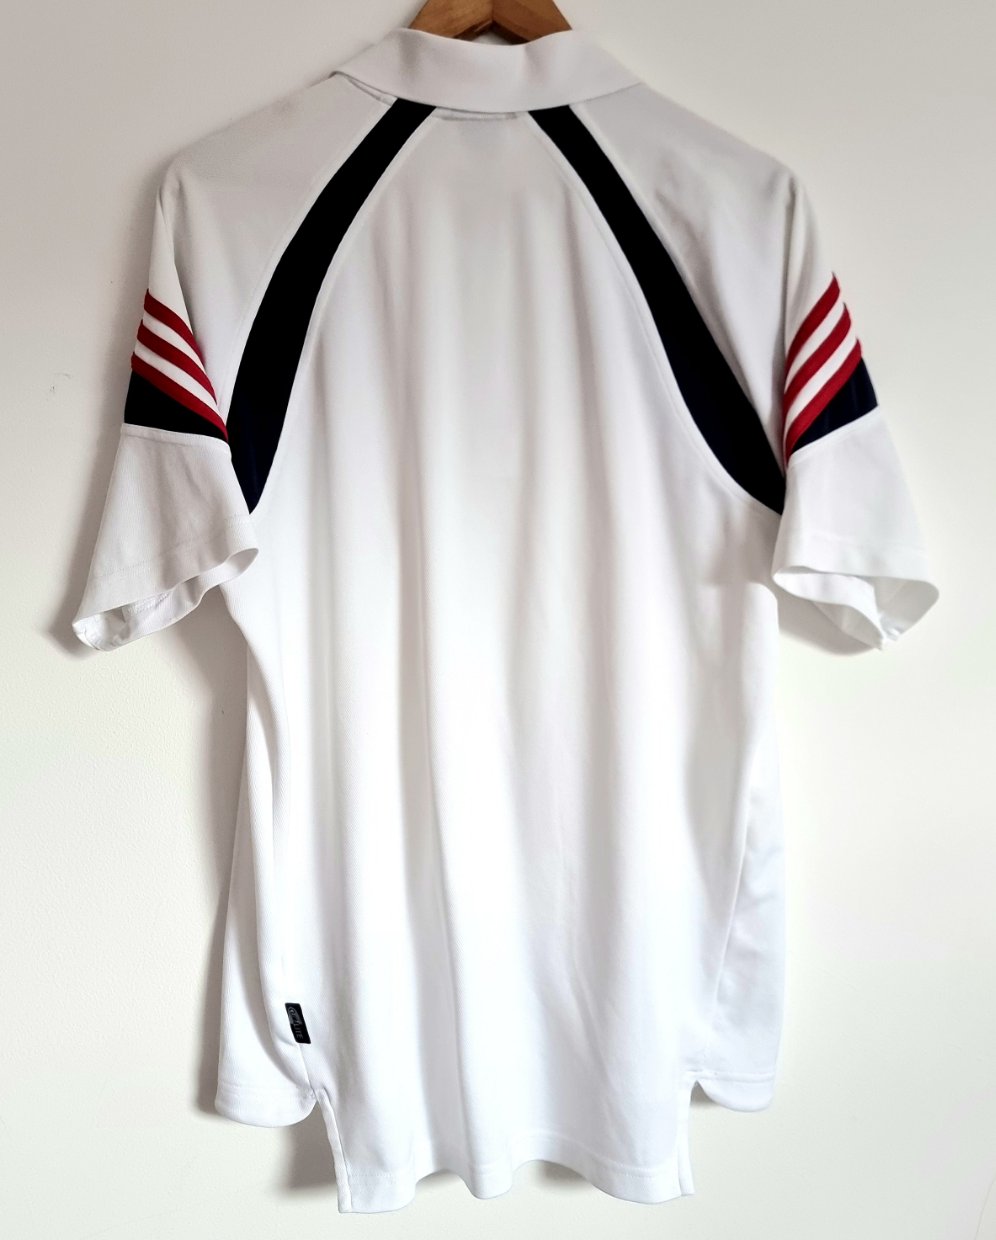 Adidas Bayern Munich 03/04 Training Polo Shirt Large